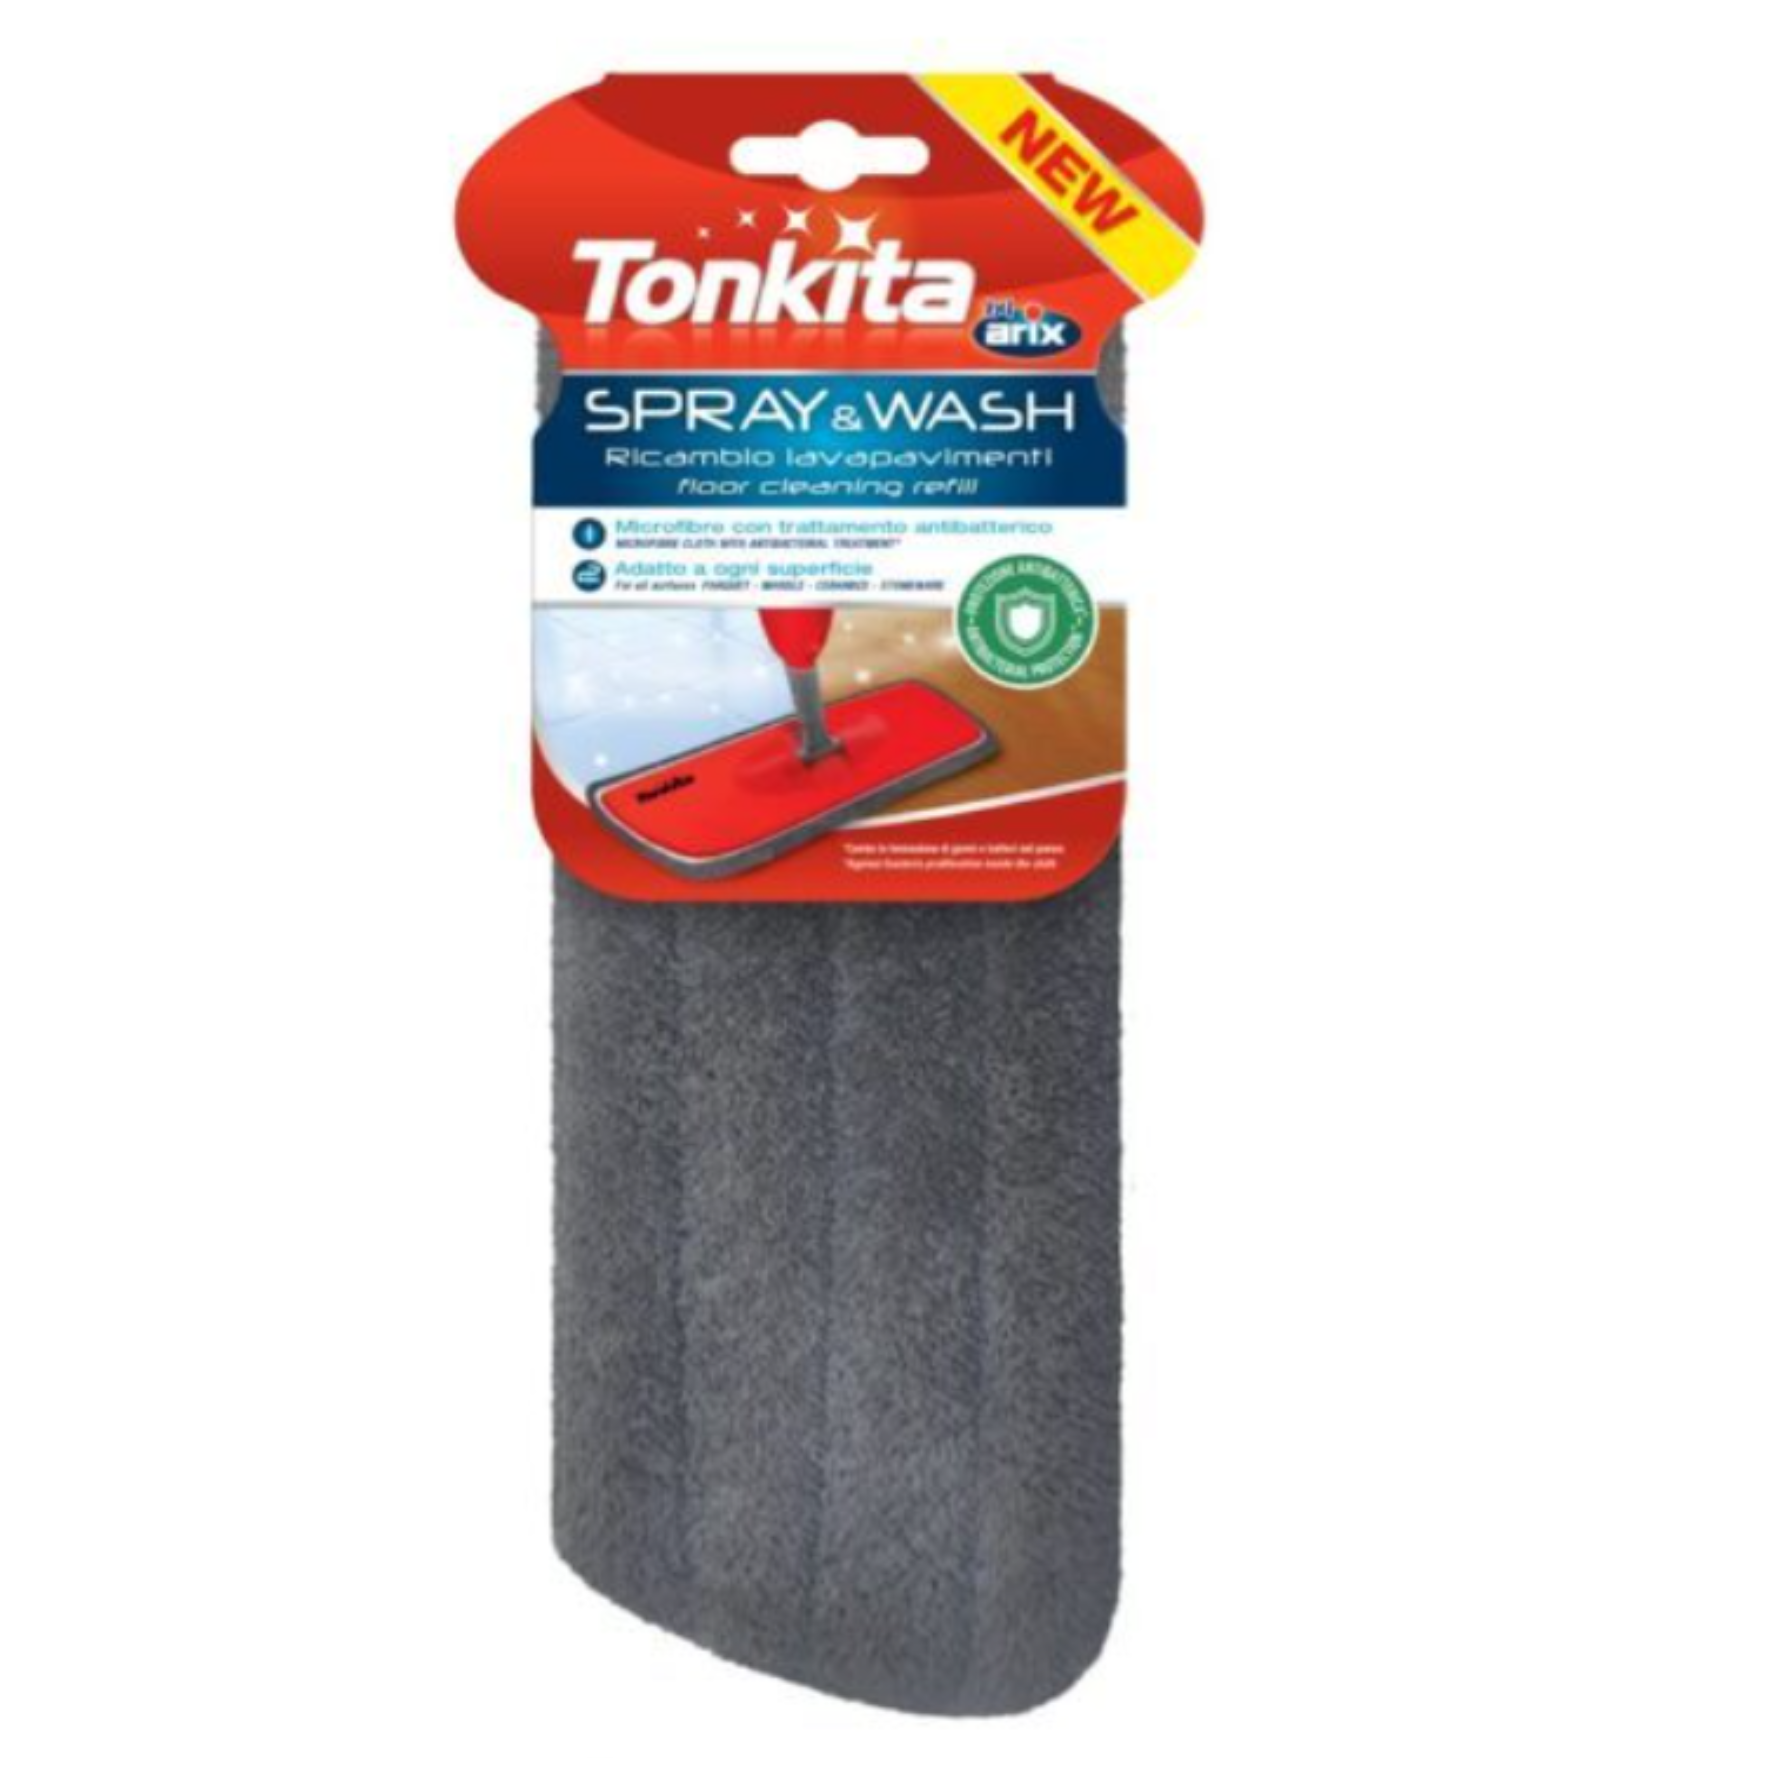 ARIX TONKITA Spray & Wash Floor Cleaning SPRAY MOP REFILL TK781R